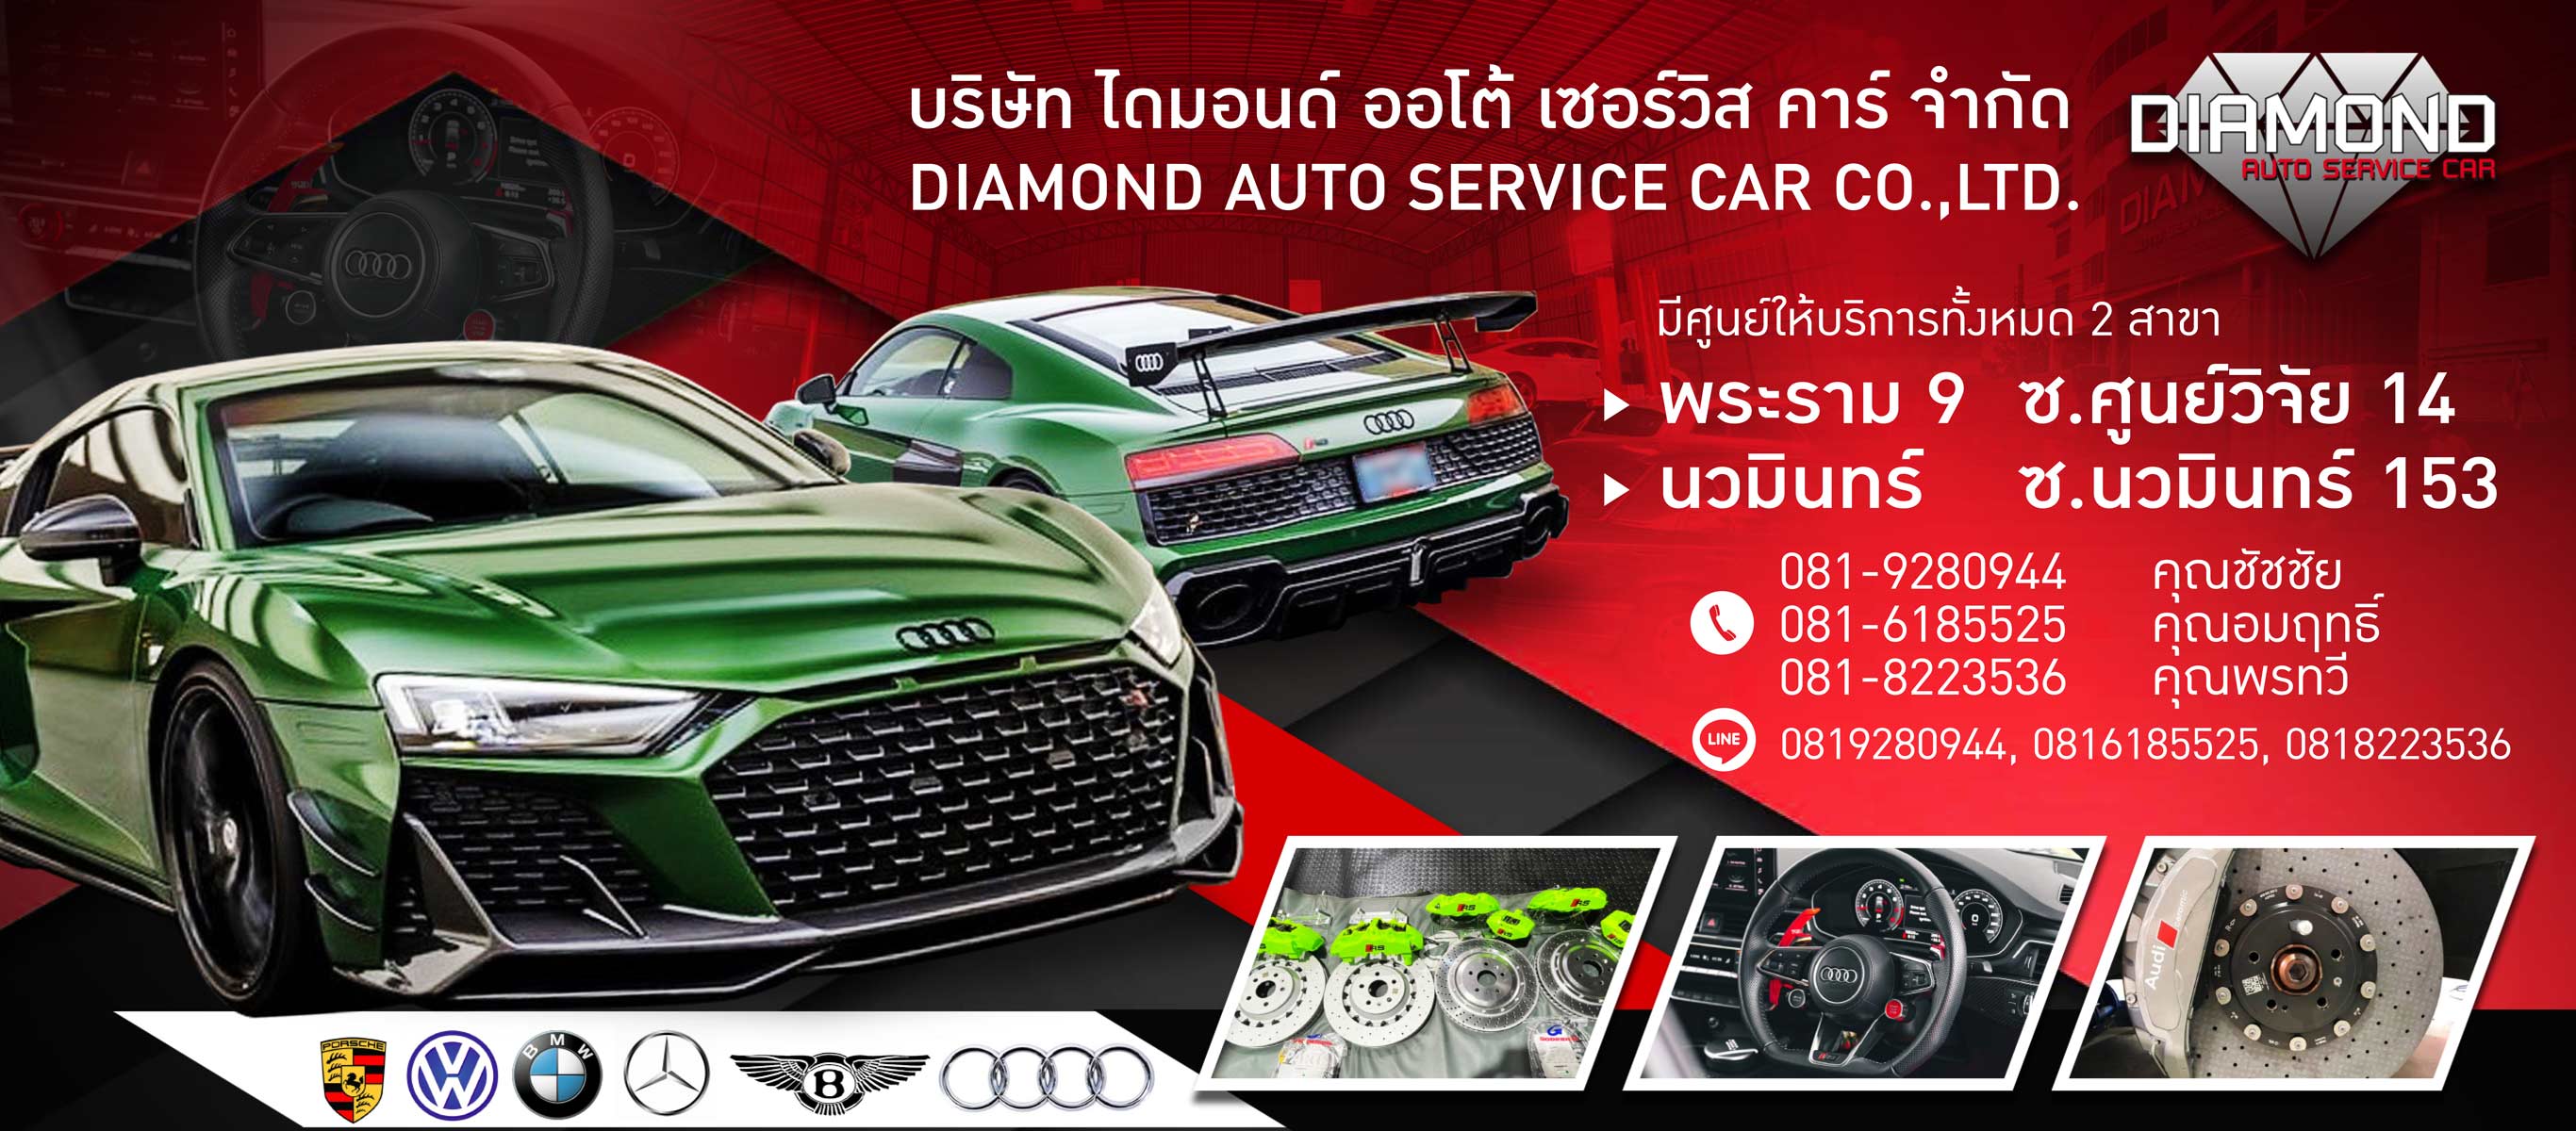 Diamond Auto Service พระรามเก้า นวมินทร์